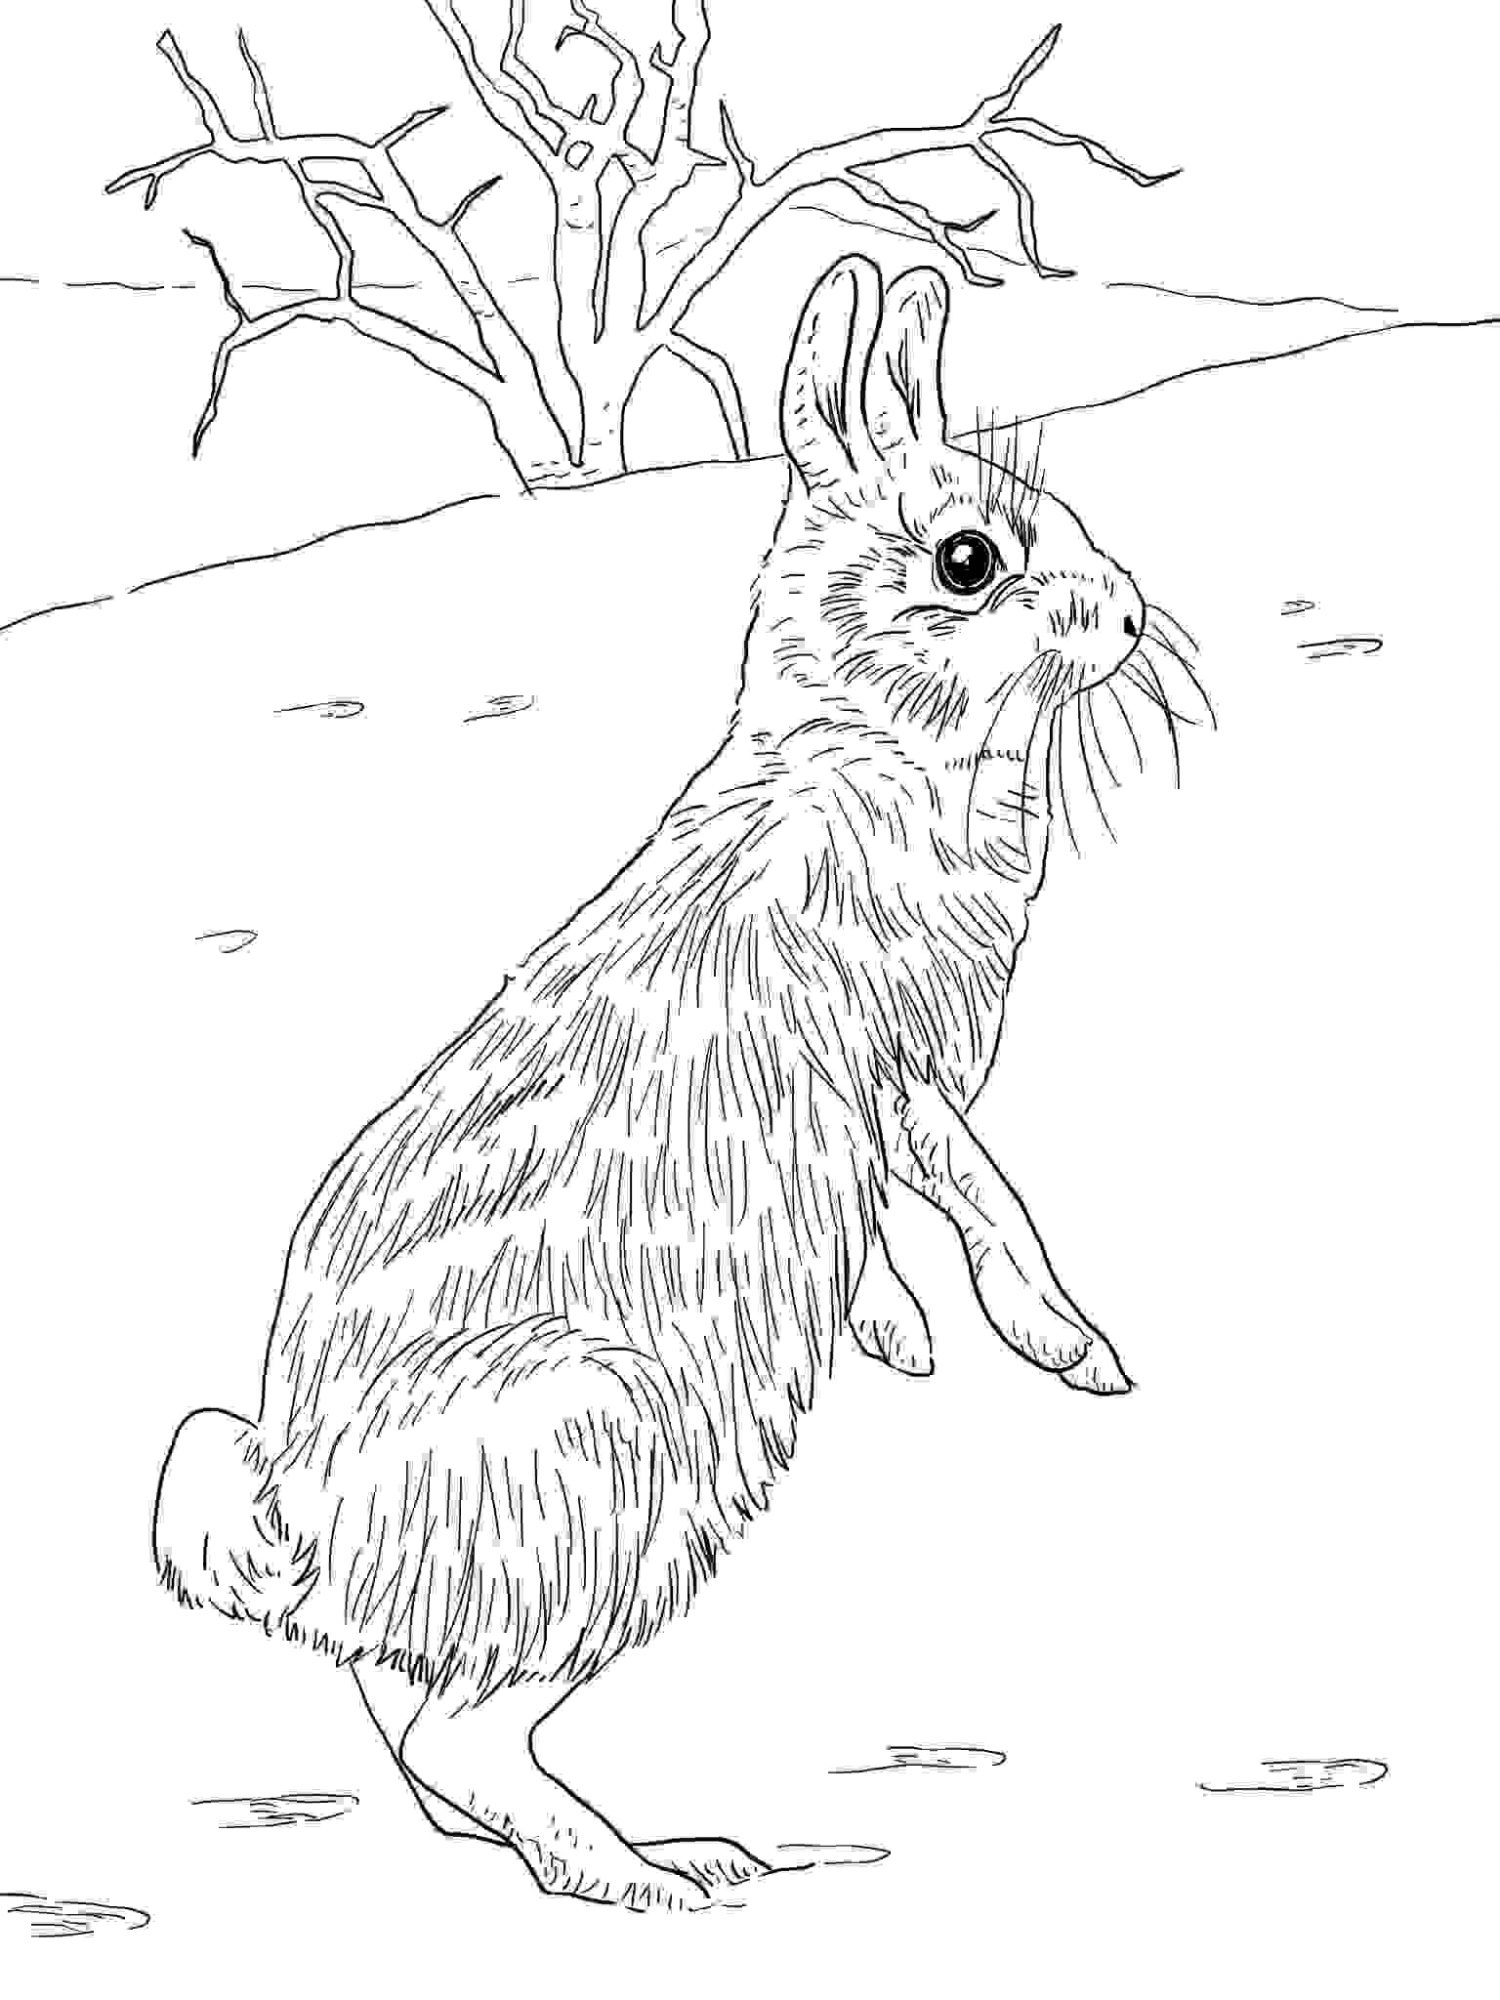 Das Baumwollschwanz-Kaninchen hat einen charakteristischen Wattebausch-Schwanz von Bunny